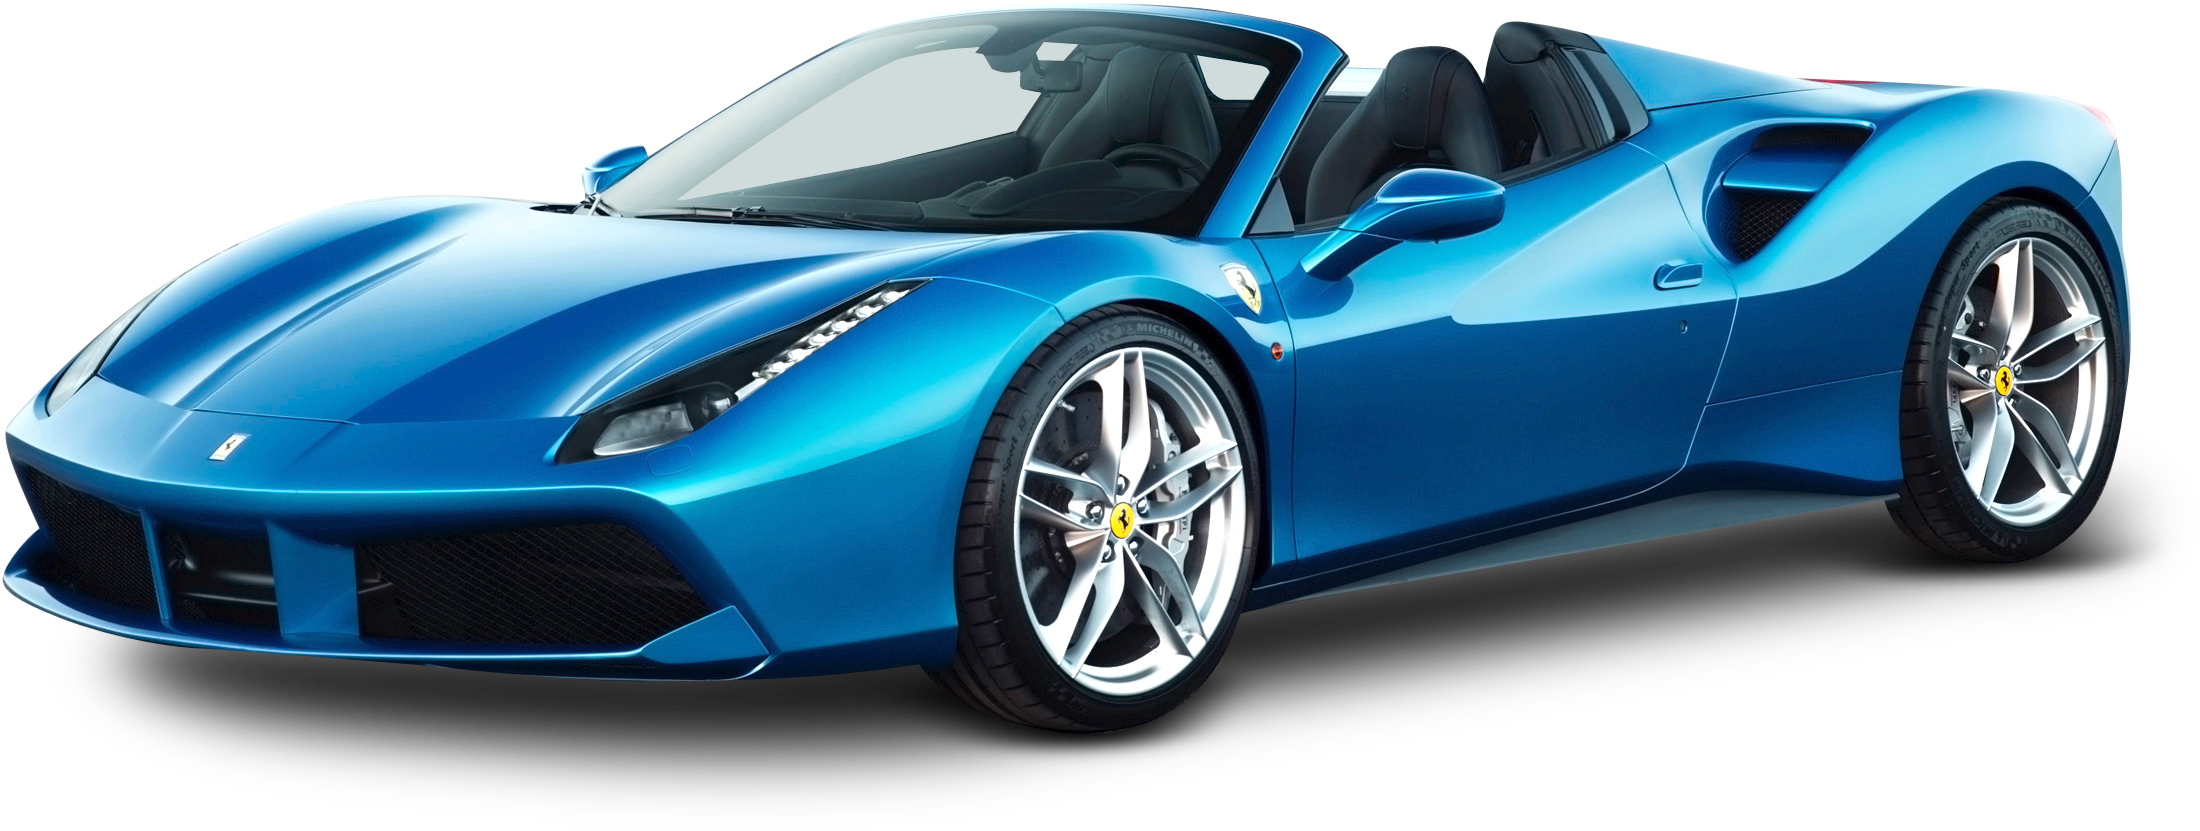 Blue Ferrari Sports Car Profile